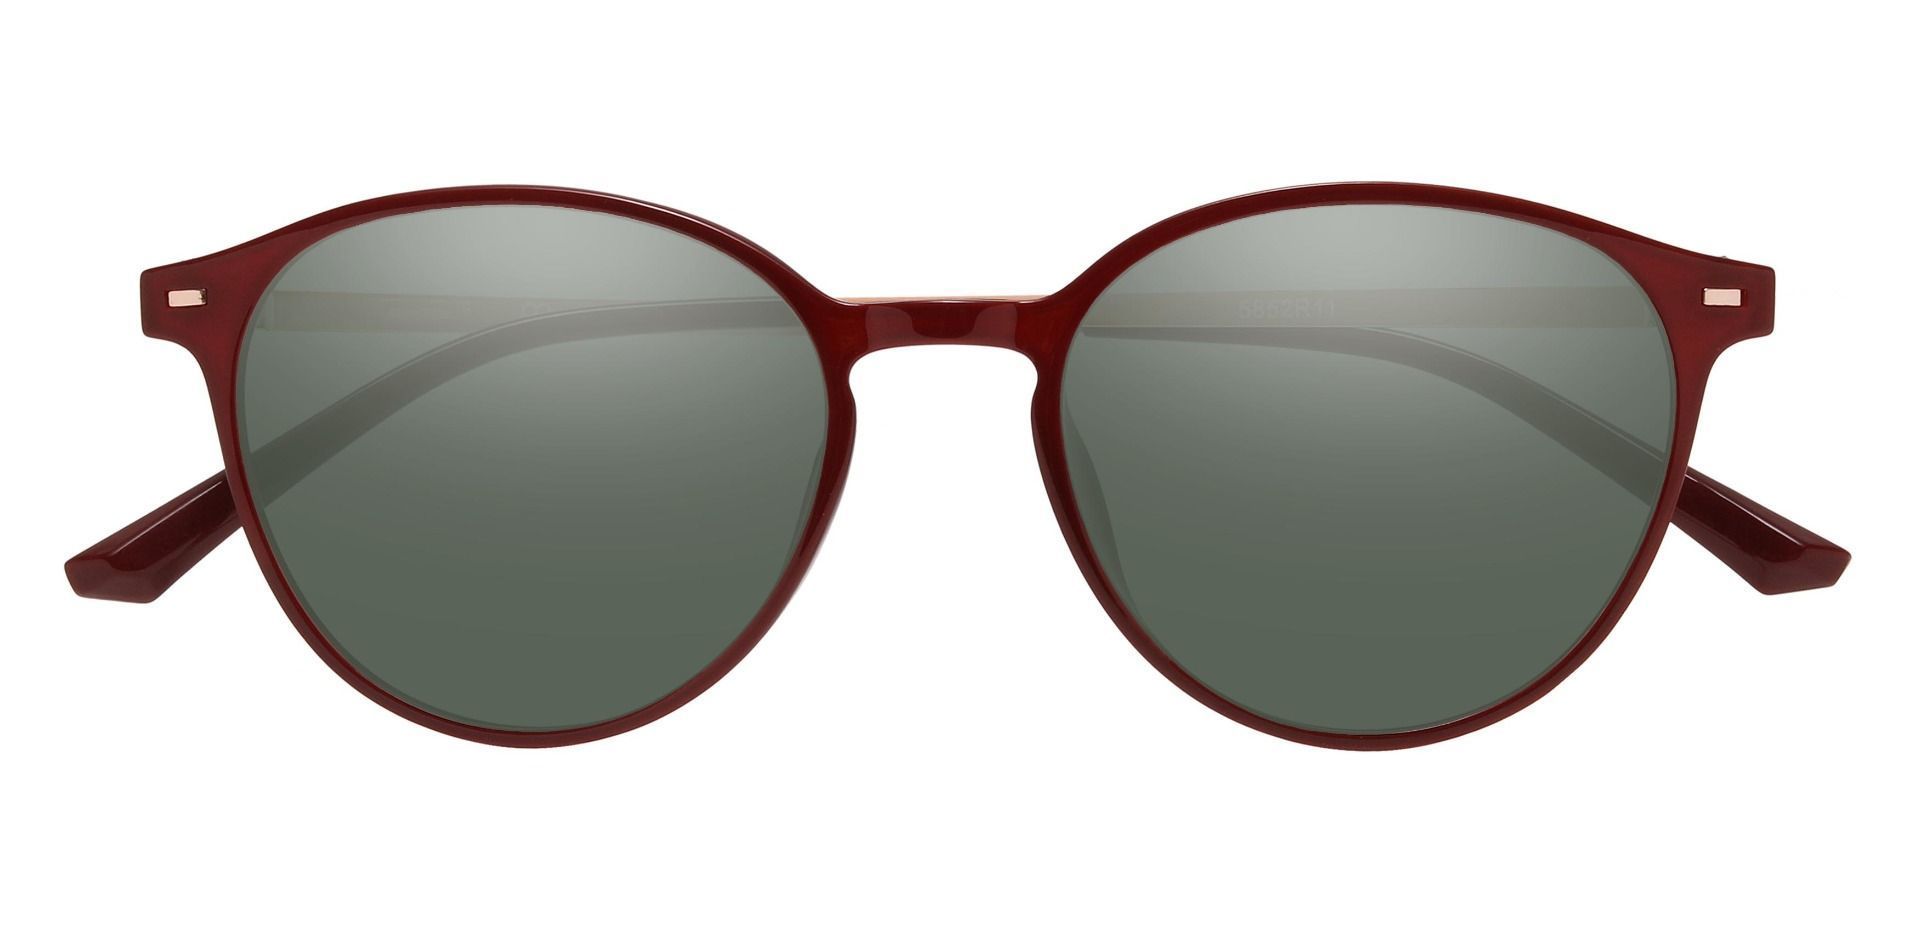 Springer Round Prescription Sunglasses - Red Frame With Green Lenses